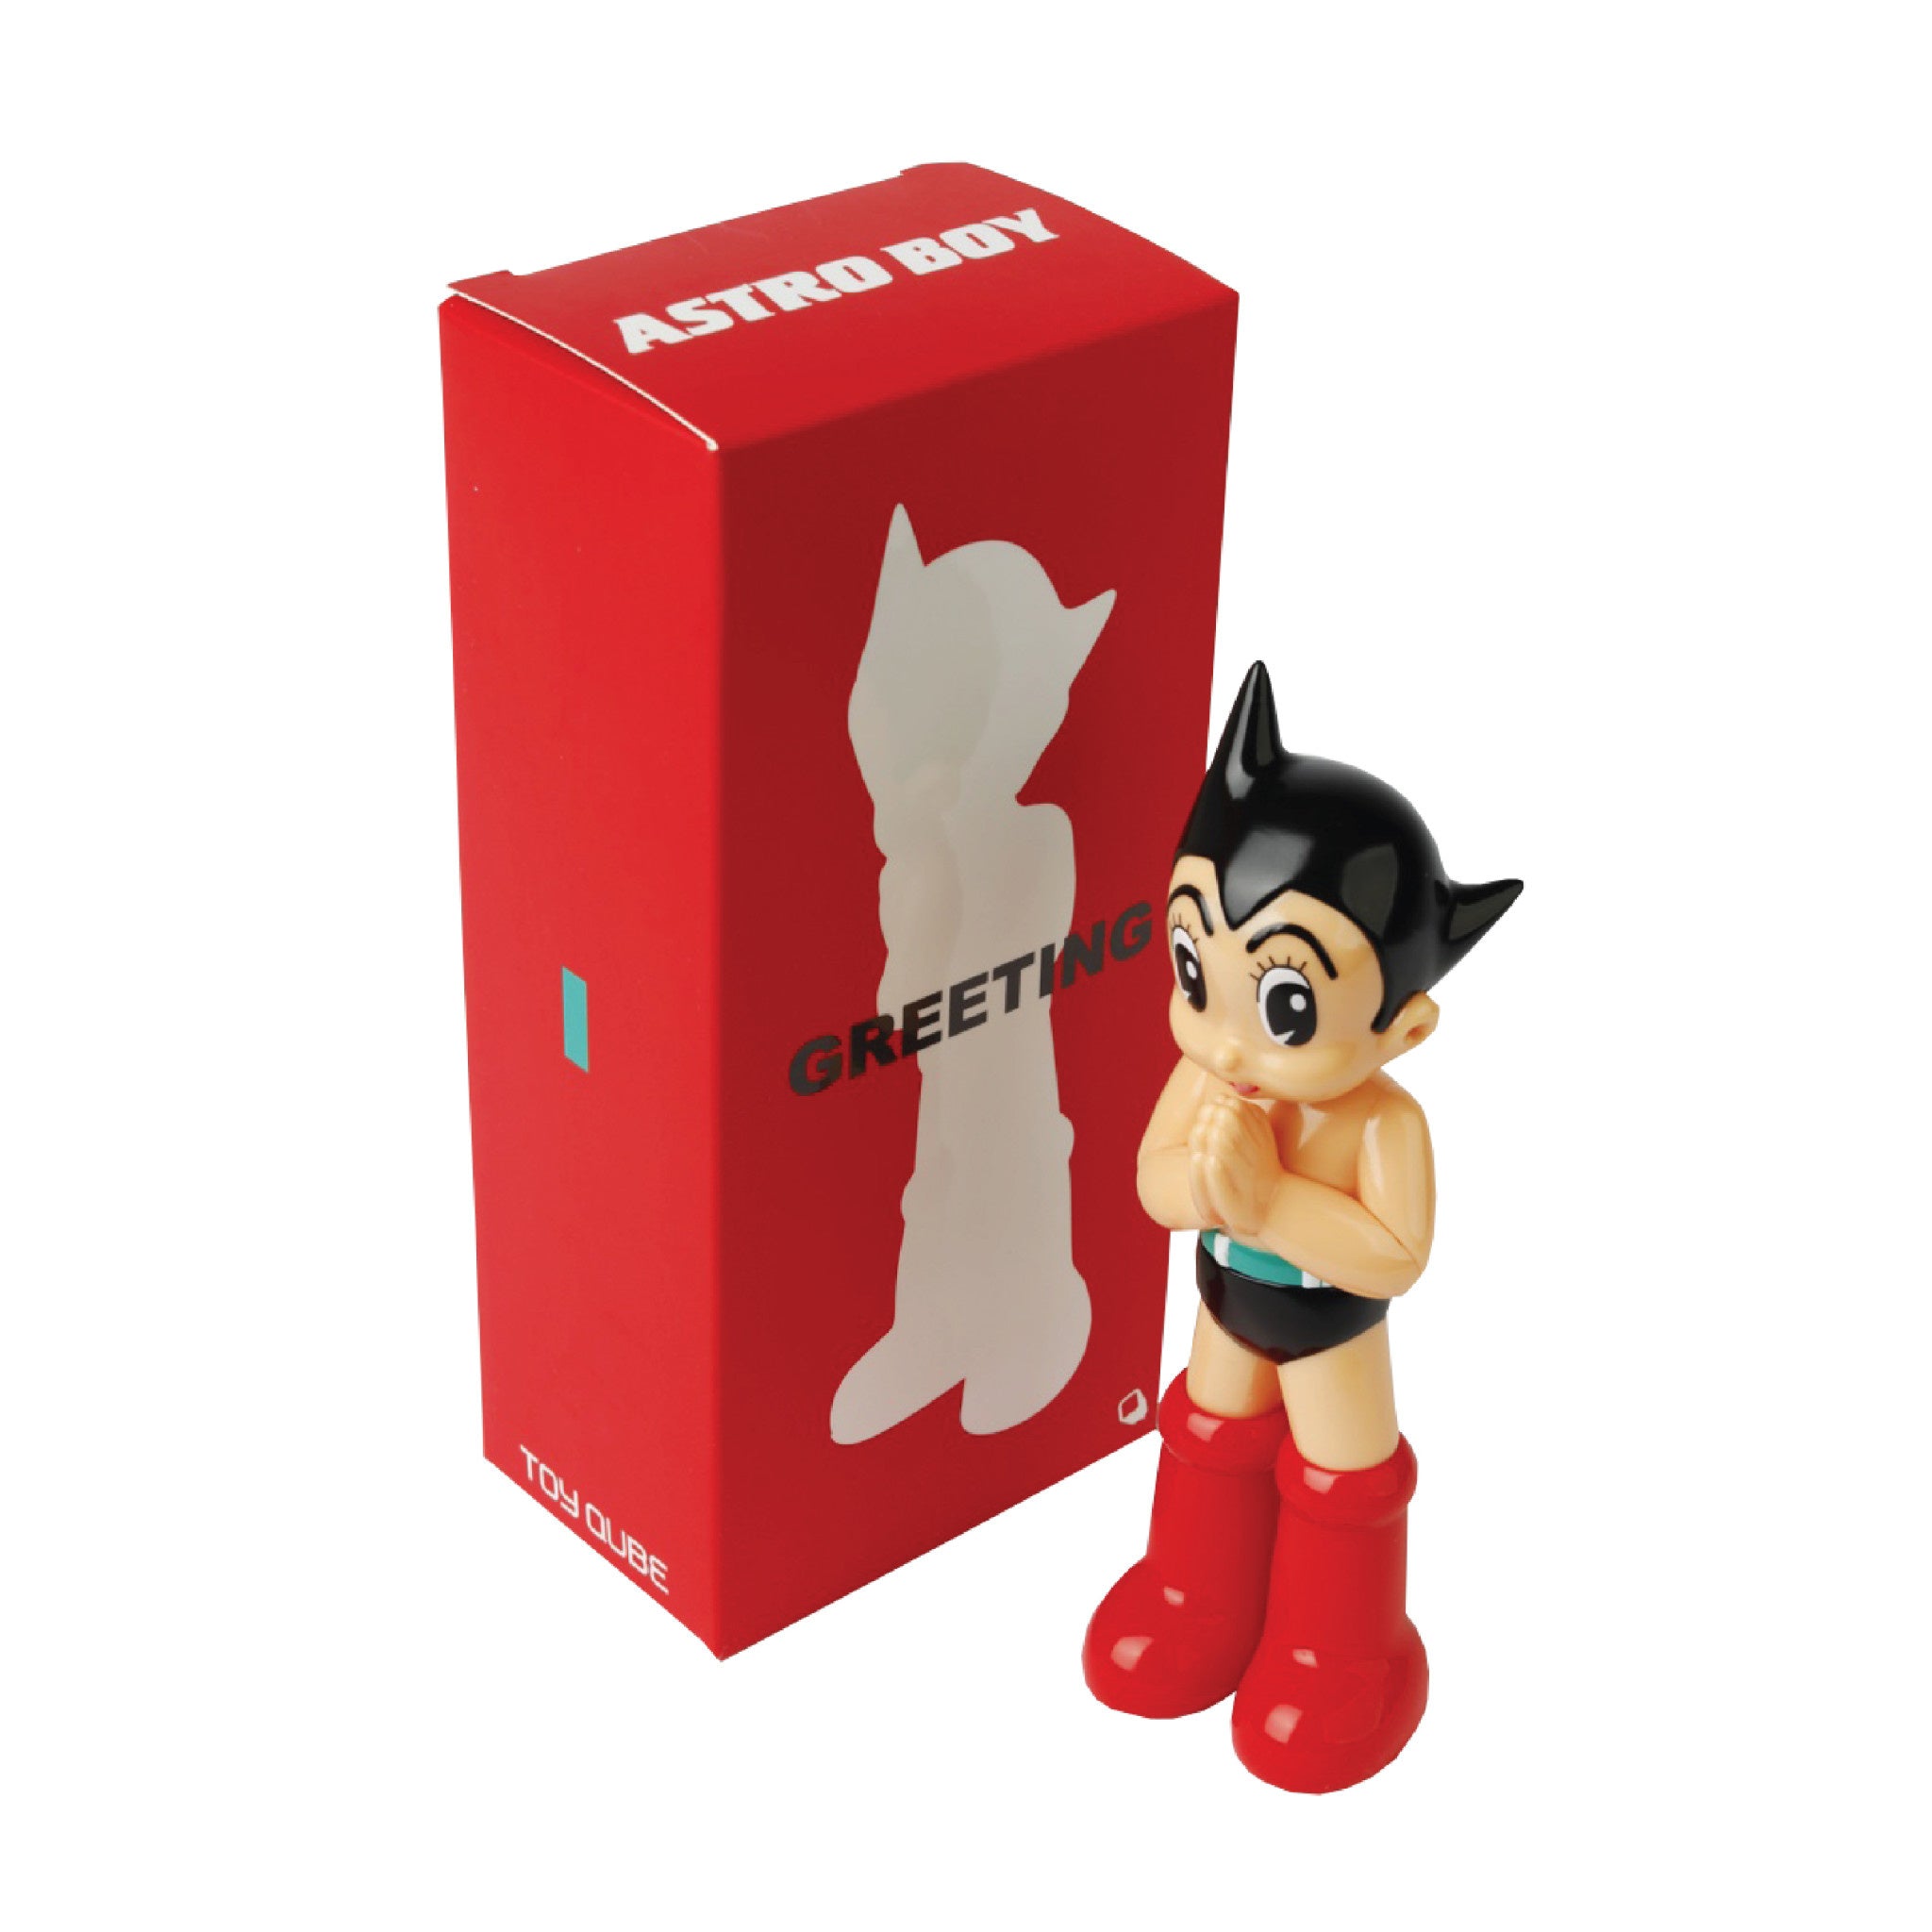 Astro Boy Greeting 6 inch - Wynwood Walls Shop